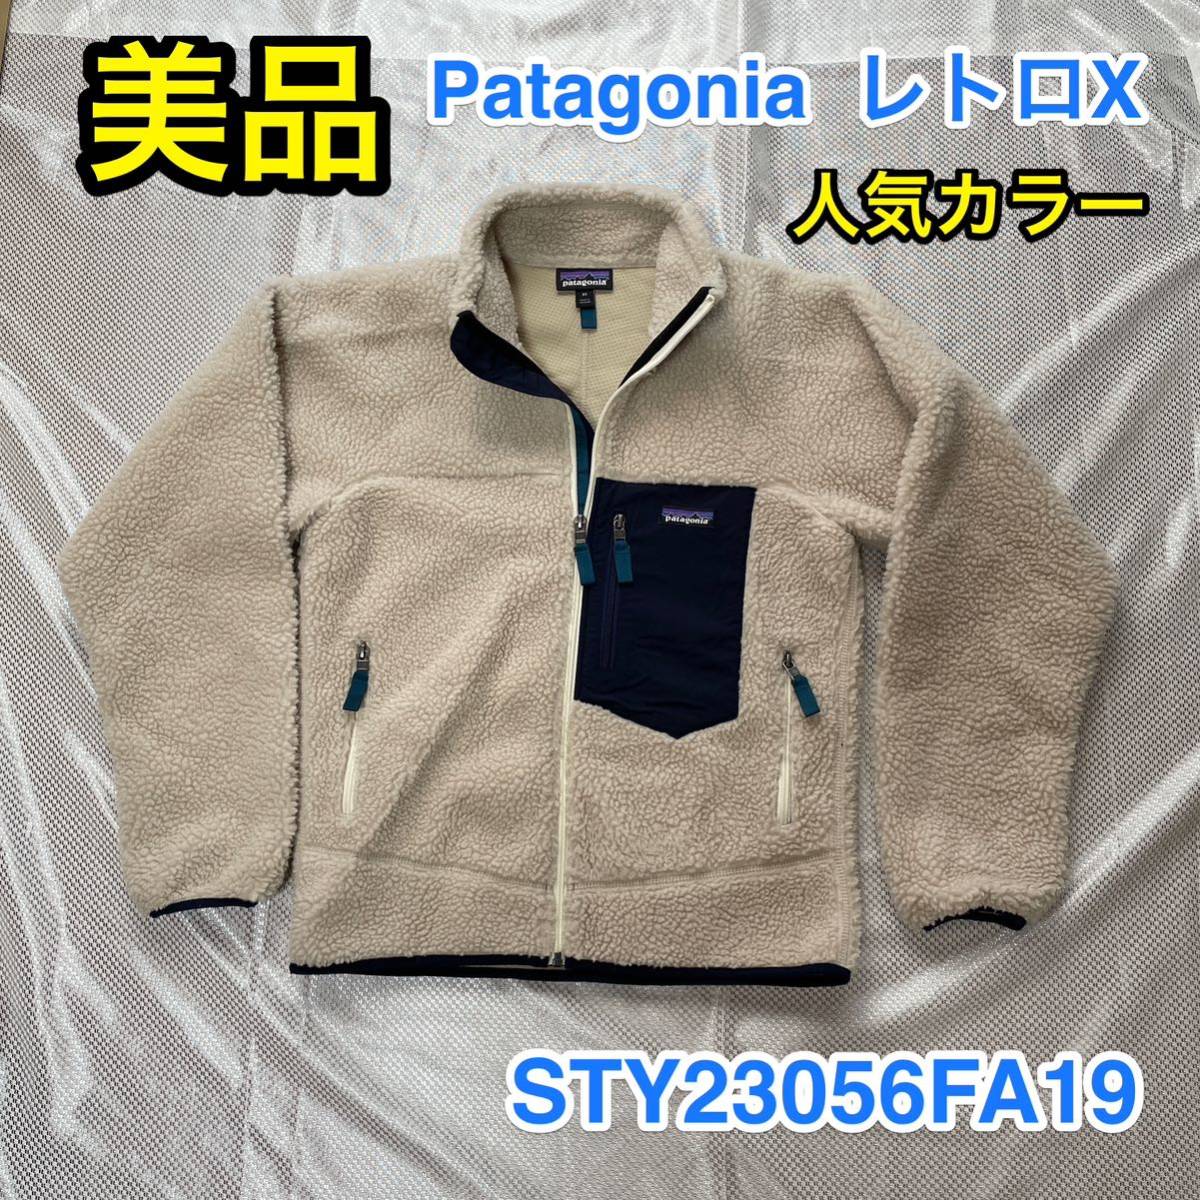 [Красивые товары / популярные цвета] Patagonia retro x флисовая куртка Men's xs Normal S ~ M Size ☆ Patagonia R1 R2 R3 R4, как ☆ 23056FA19 ☆